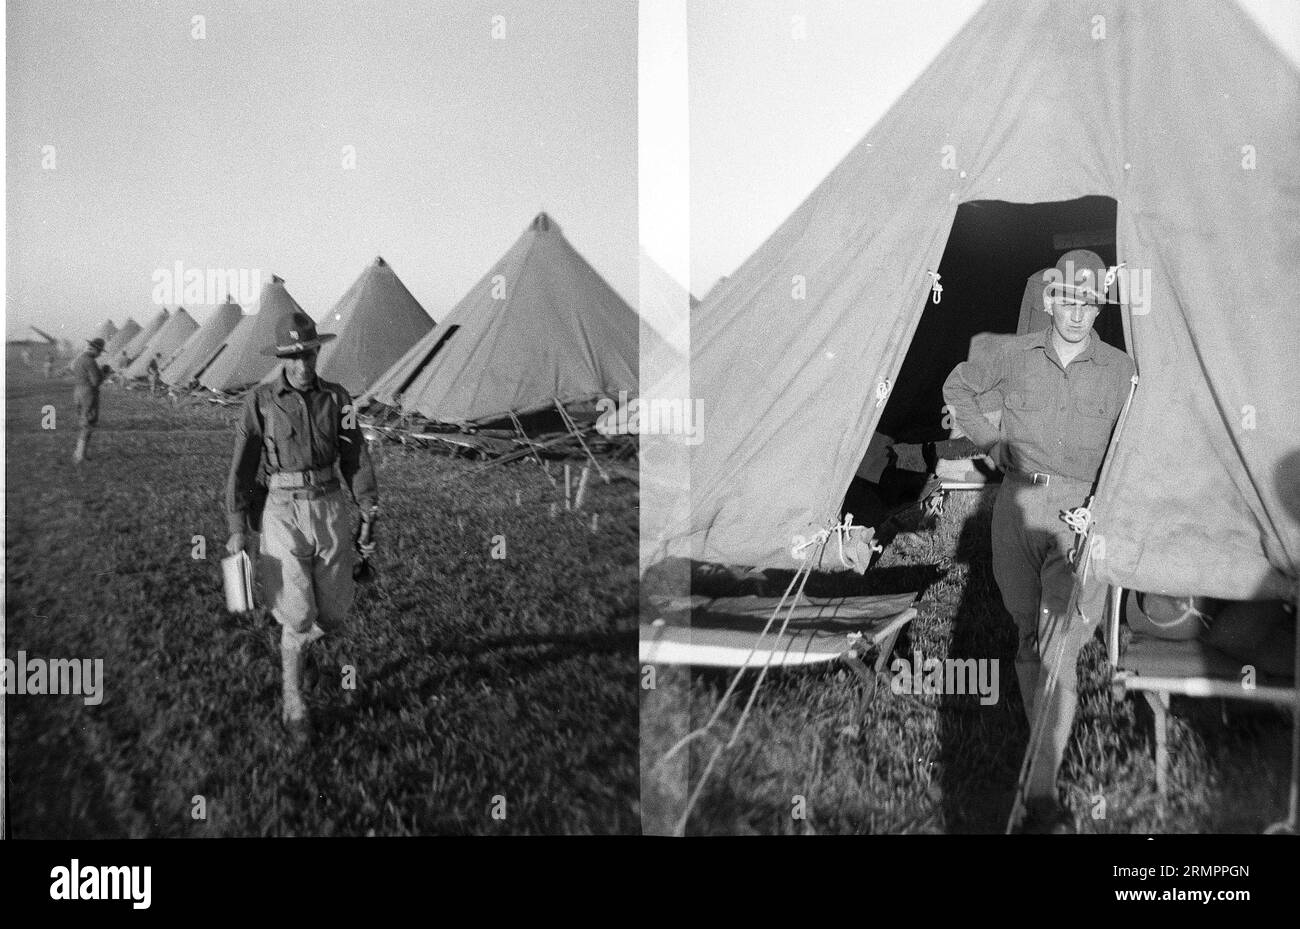 Soldat und Zelte. Mitglieder der 114. Infanteriedivision der US-Armee trainieren im Zweiten Weltkrieg gegen Deutschland in Europa. Stockfoto